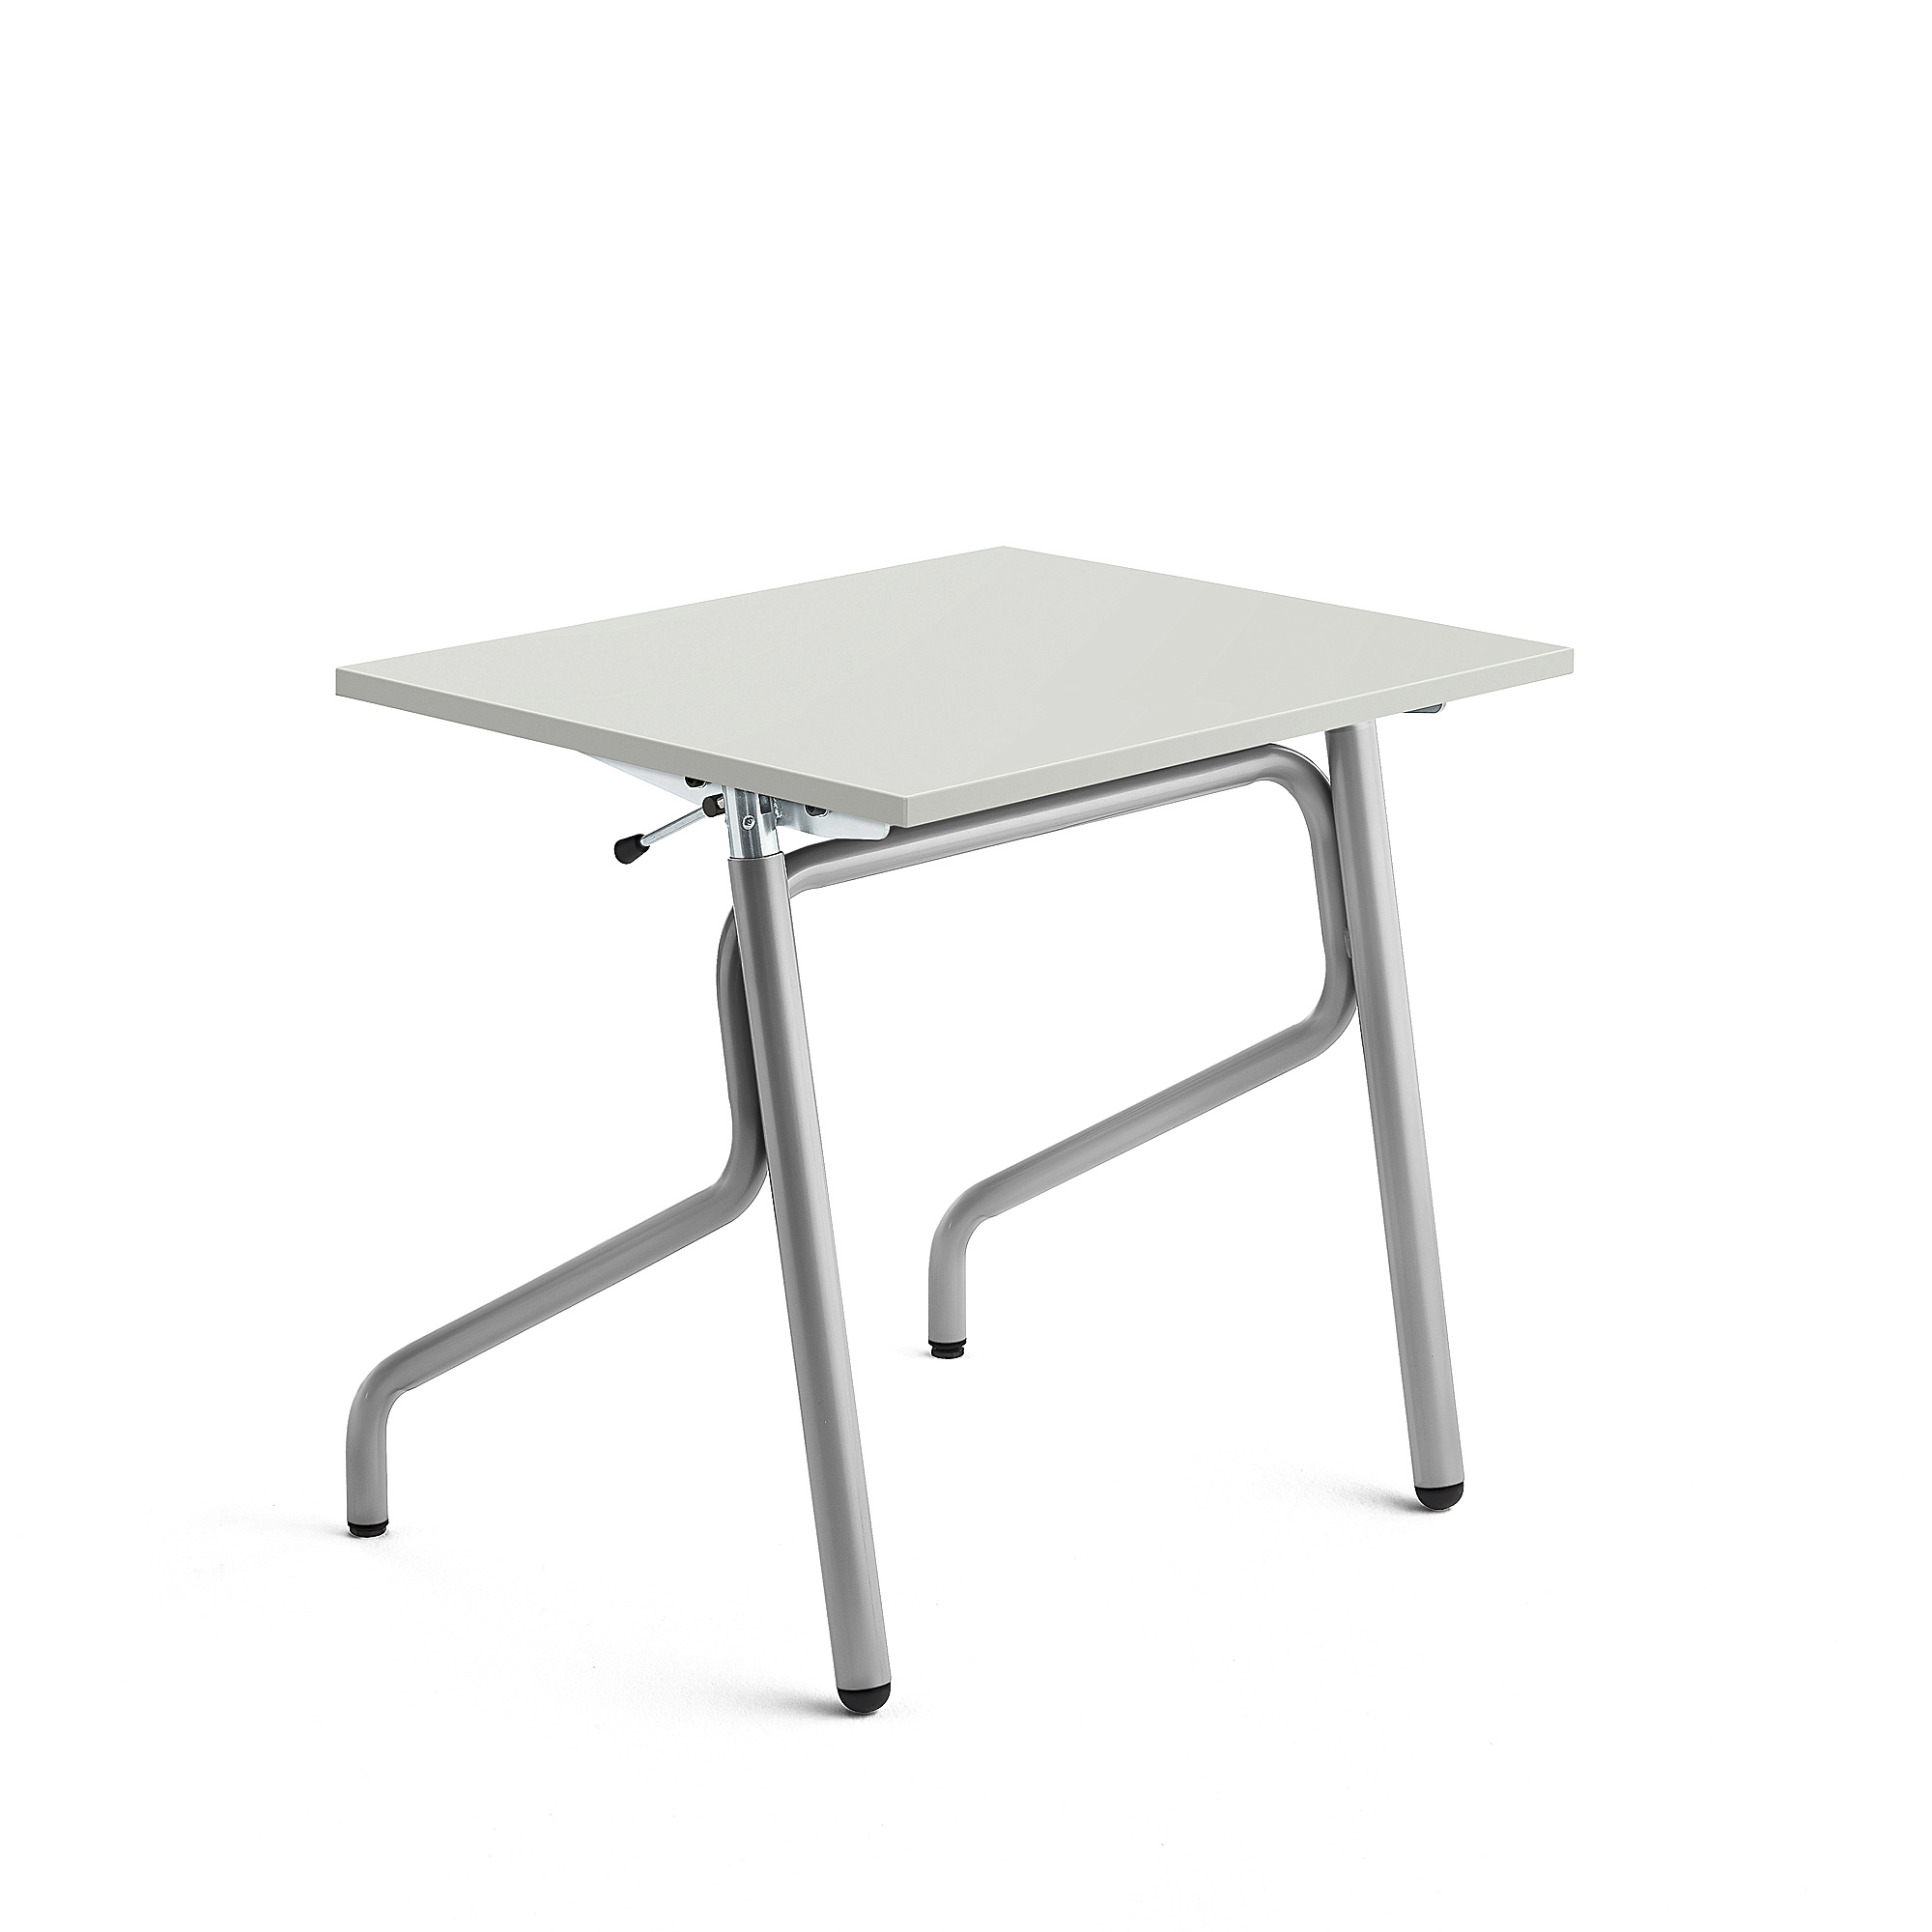 Školní lavice ADJUST, výškově nastavitelná, 700x600 mm, HPL deska tlumící hluk, šedá, stříbrná